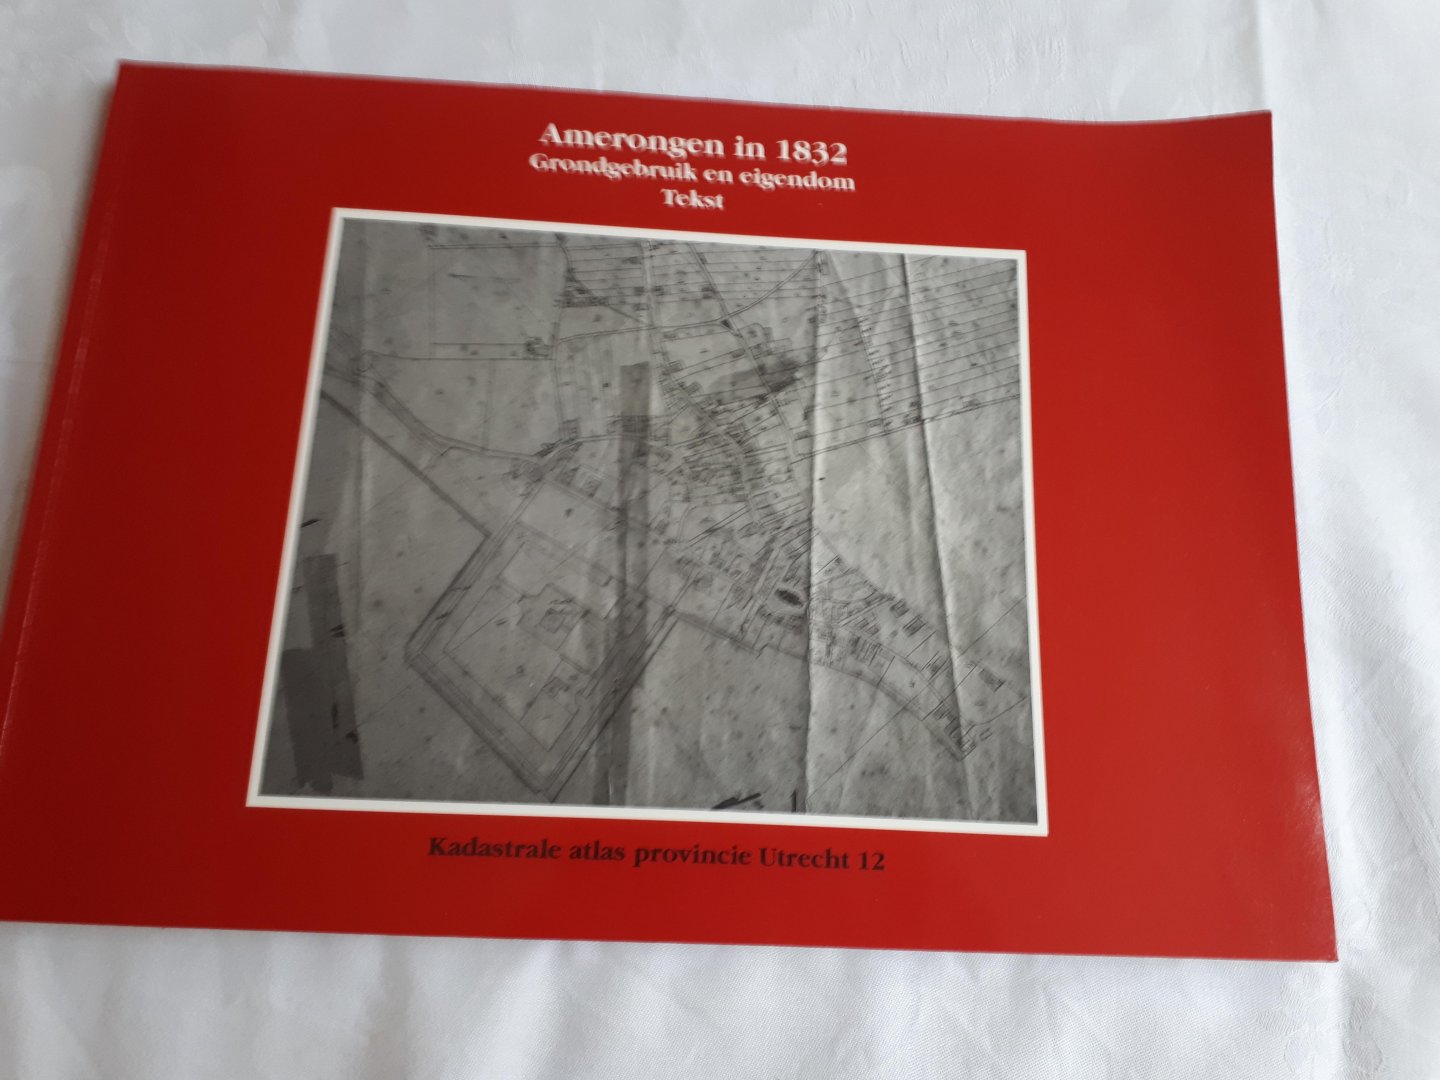  - Amerongen in 1832. Grondgebruik en eigendom. Tekst +  Kaarten. Kadastrale atlas provincie Utrecht 12